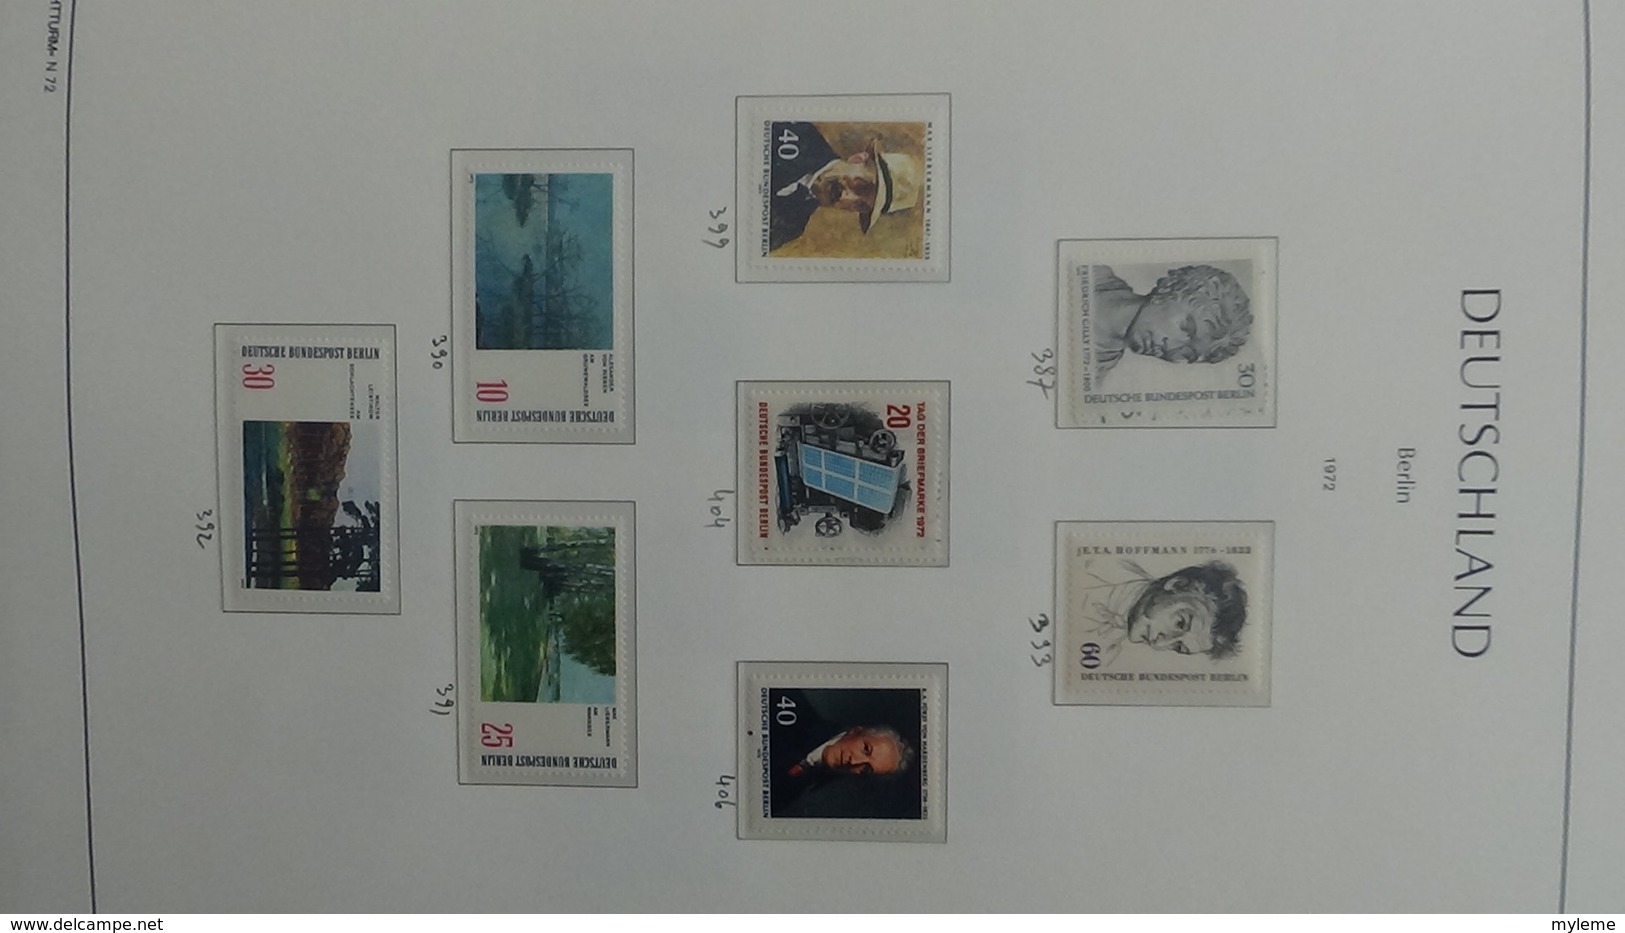 Très belle collection de timbres et blocs ** d'ALLEMAGNE (Berlin) de 1956 à 1990 Port 13.15 OFFERT !!!